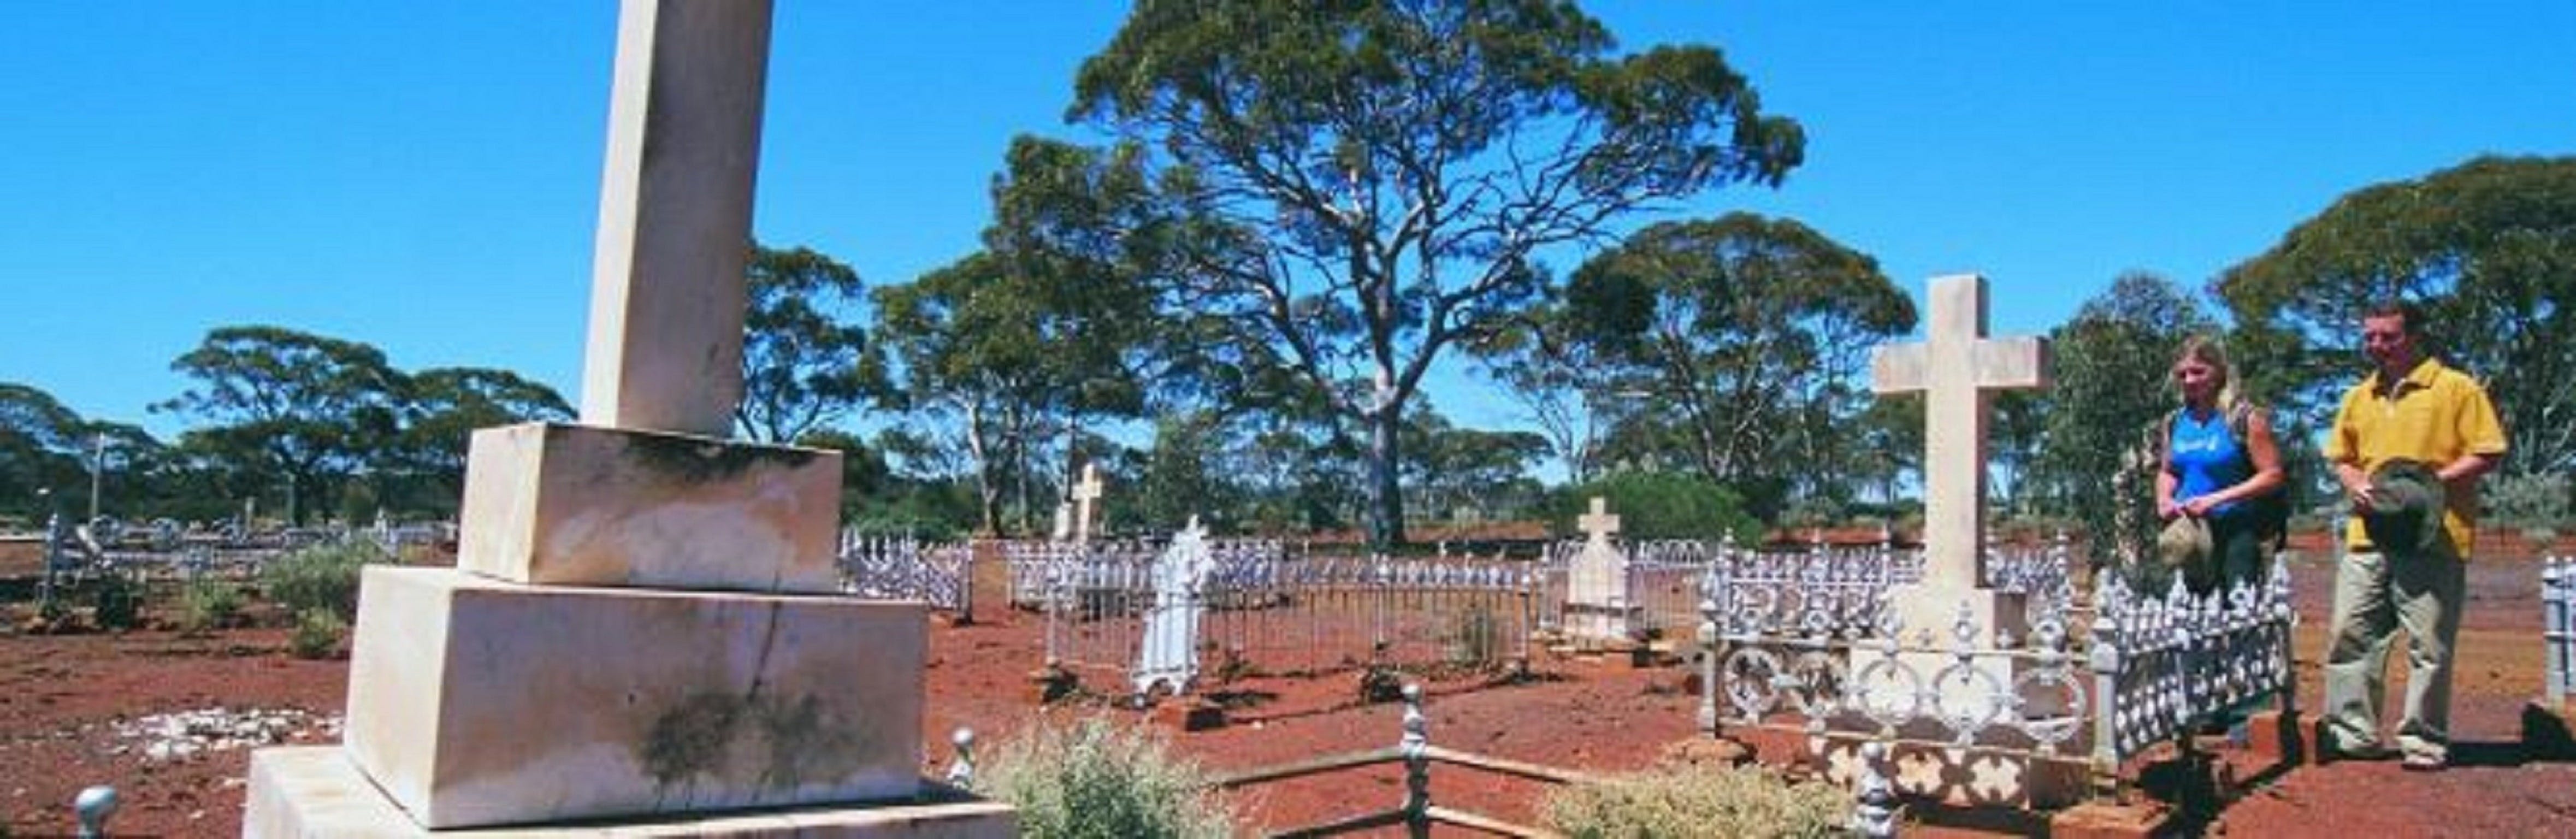 Old Pioneer Cemetery Coolgardie - Attractions